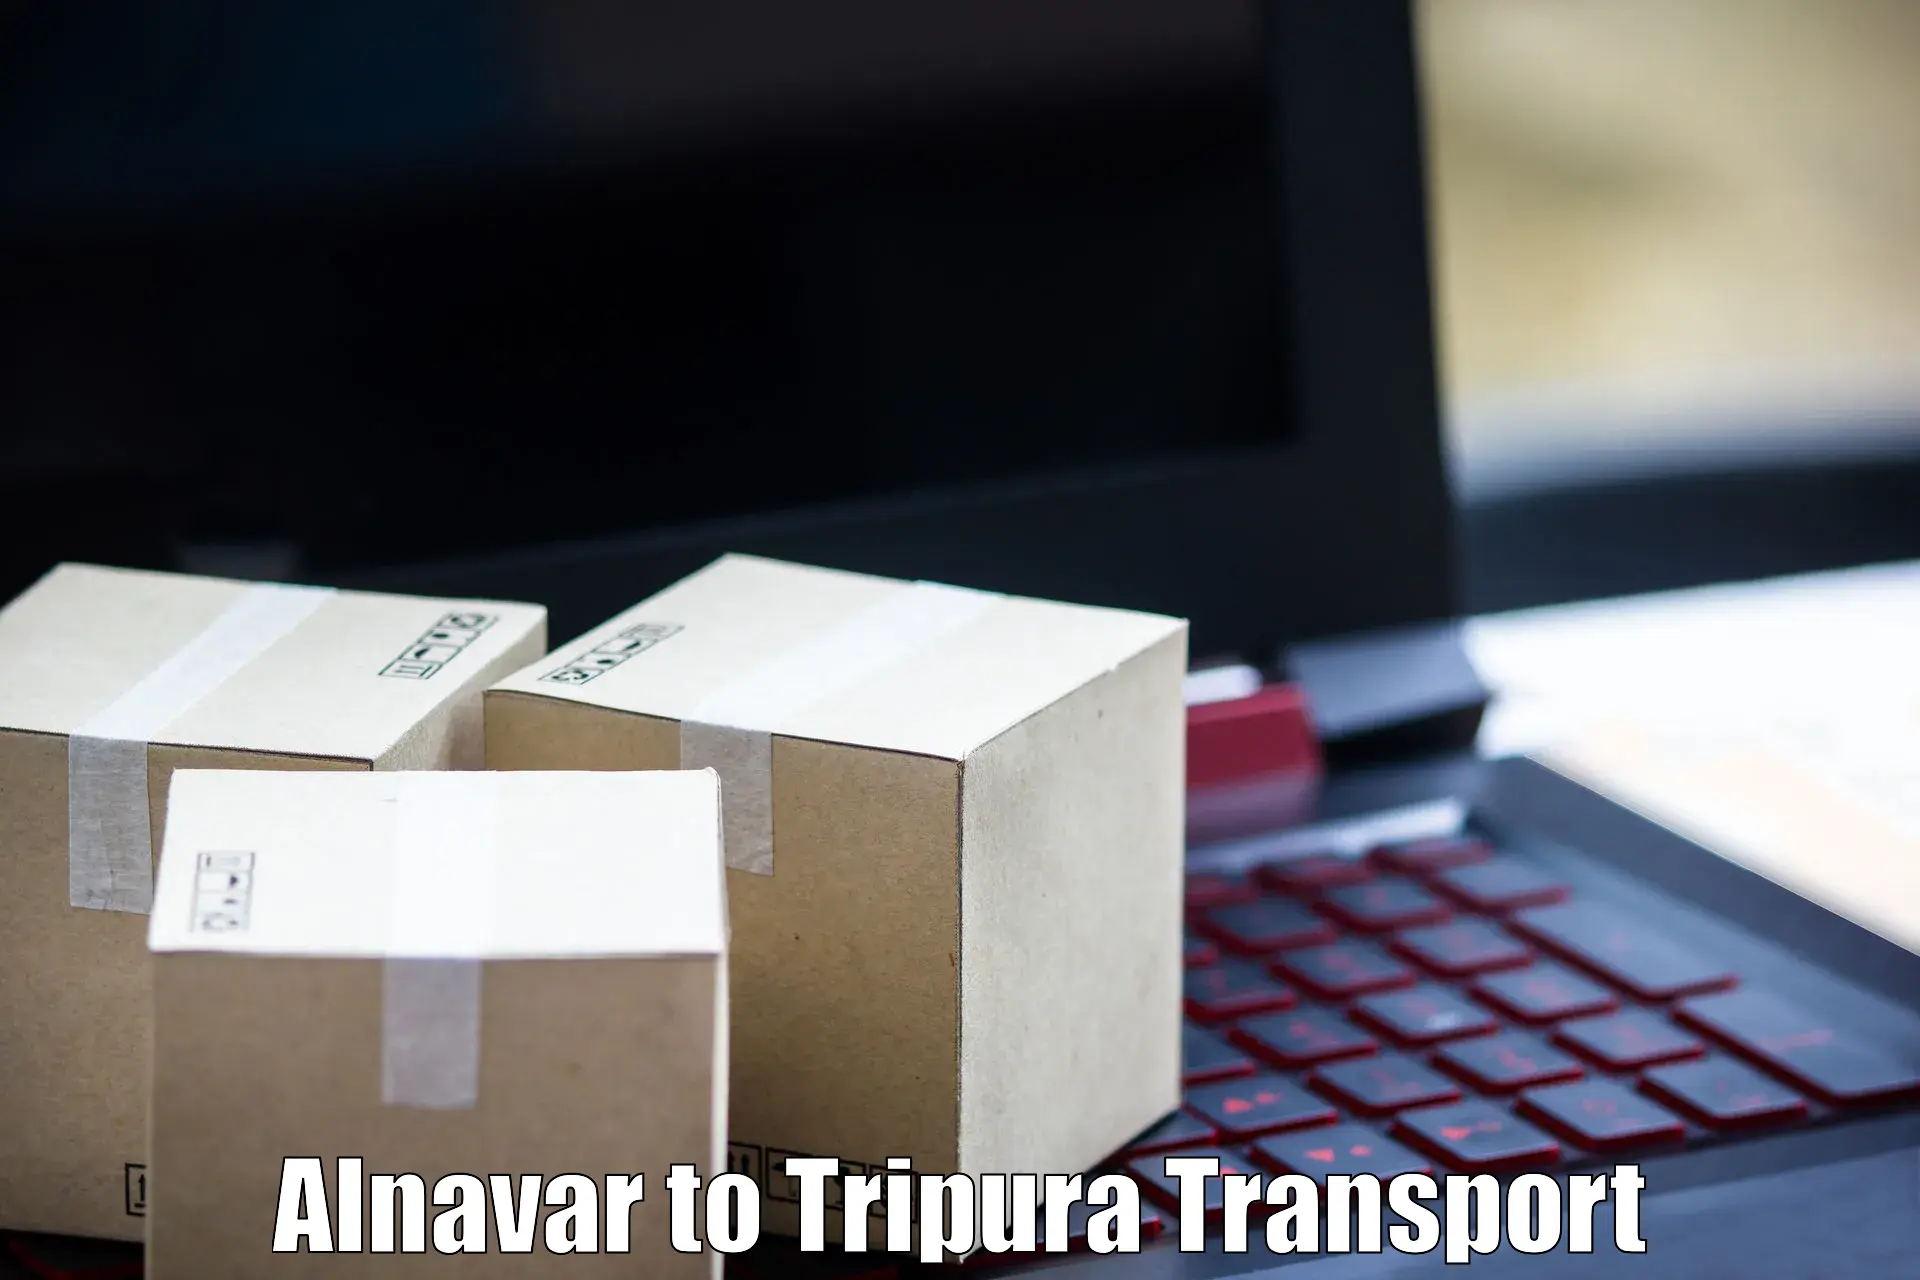 Commercial transport service Alnavar to Manughat